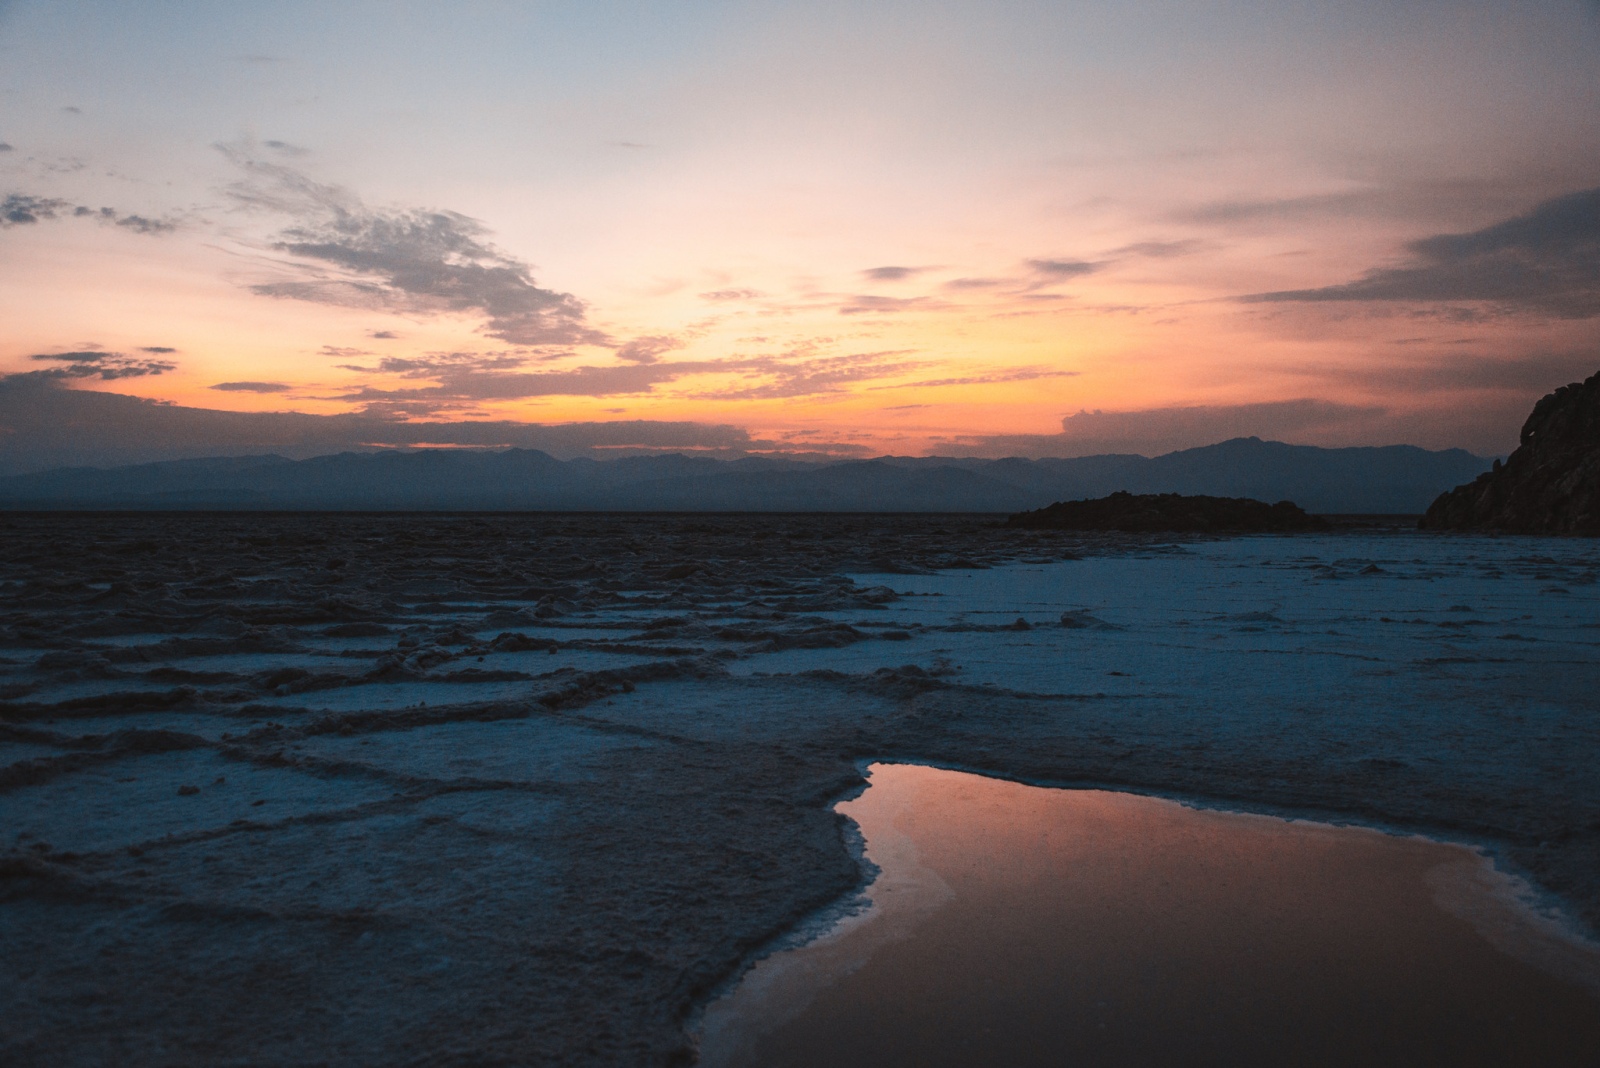 Những hồ muối nơi “lòng chảo” Danakil - Vùng đất khắc nghiệt nhất hành tinh